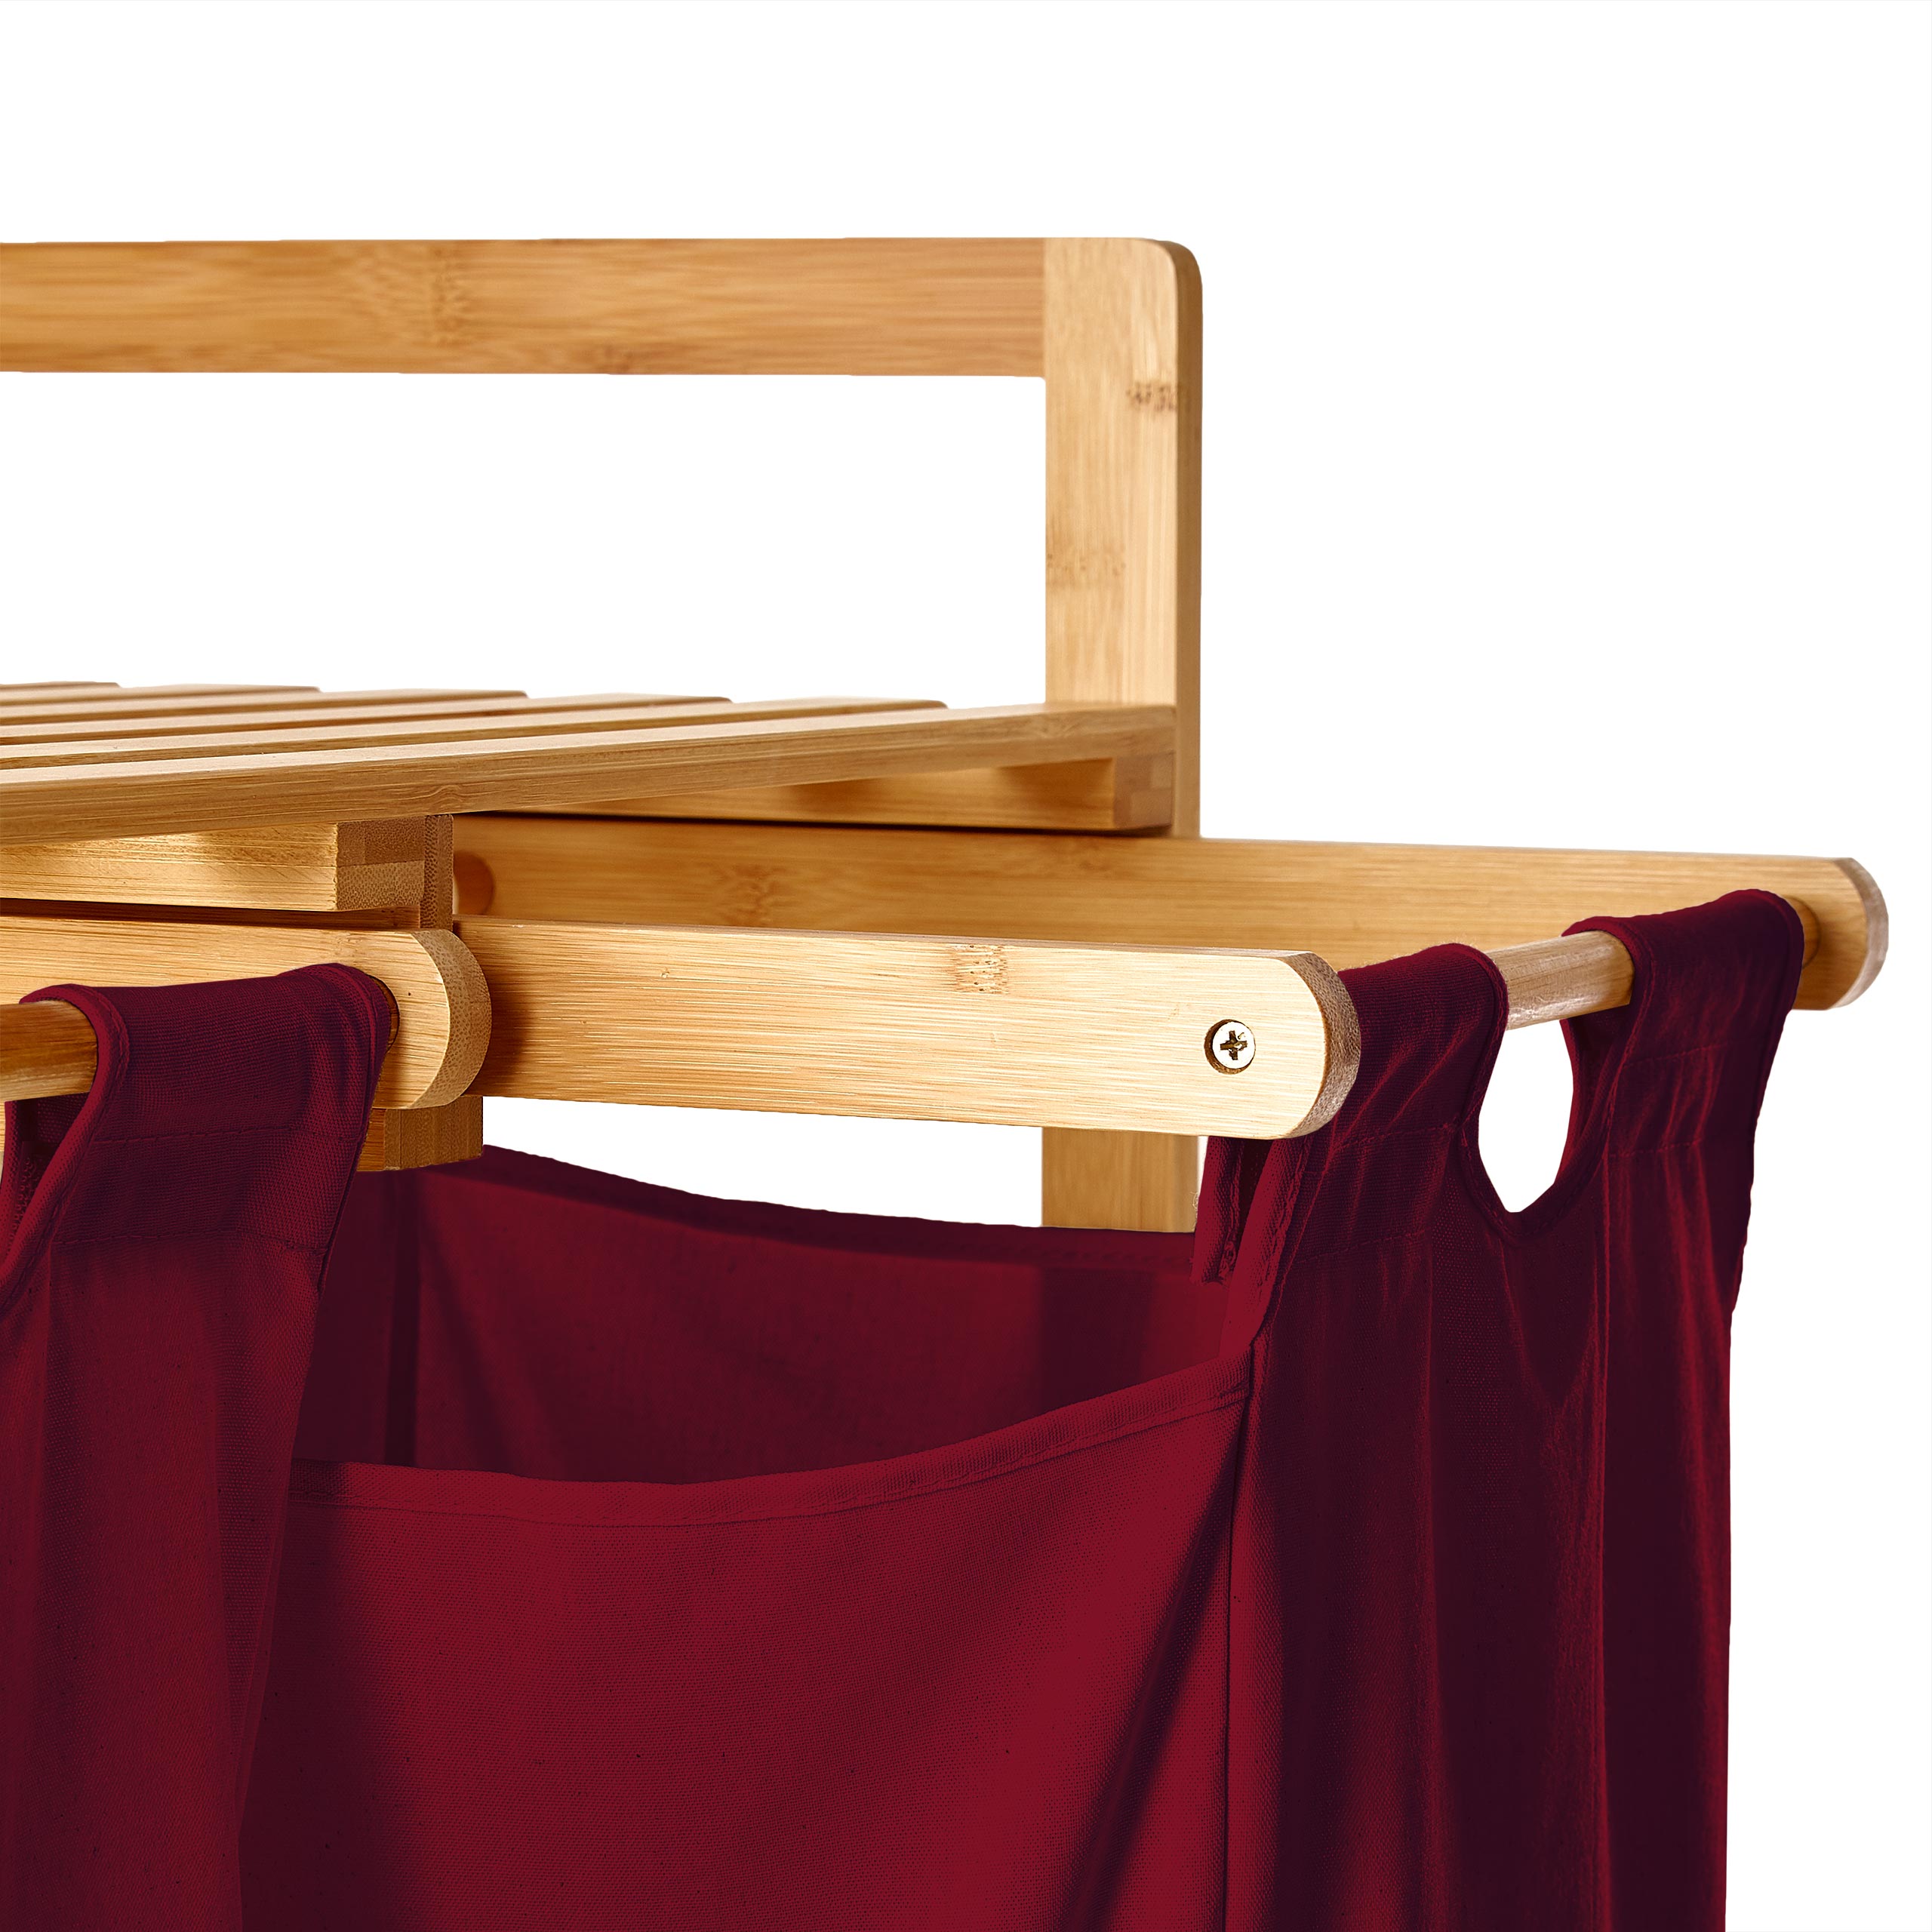 Wäschekorb aus Bambus mit 2 ausziehbaren Wäschesäcken - Größe ca. 73 cm Höhe x 64 cm Breite x 33 cm Tiefe - Farbe Dunkelrot